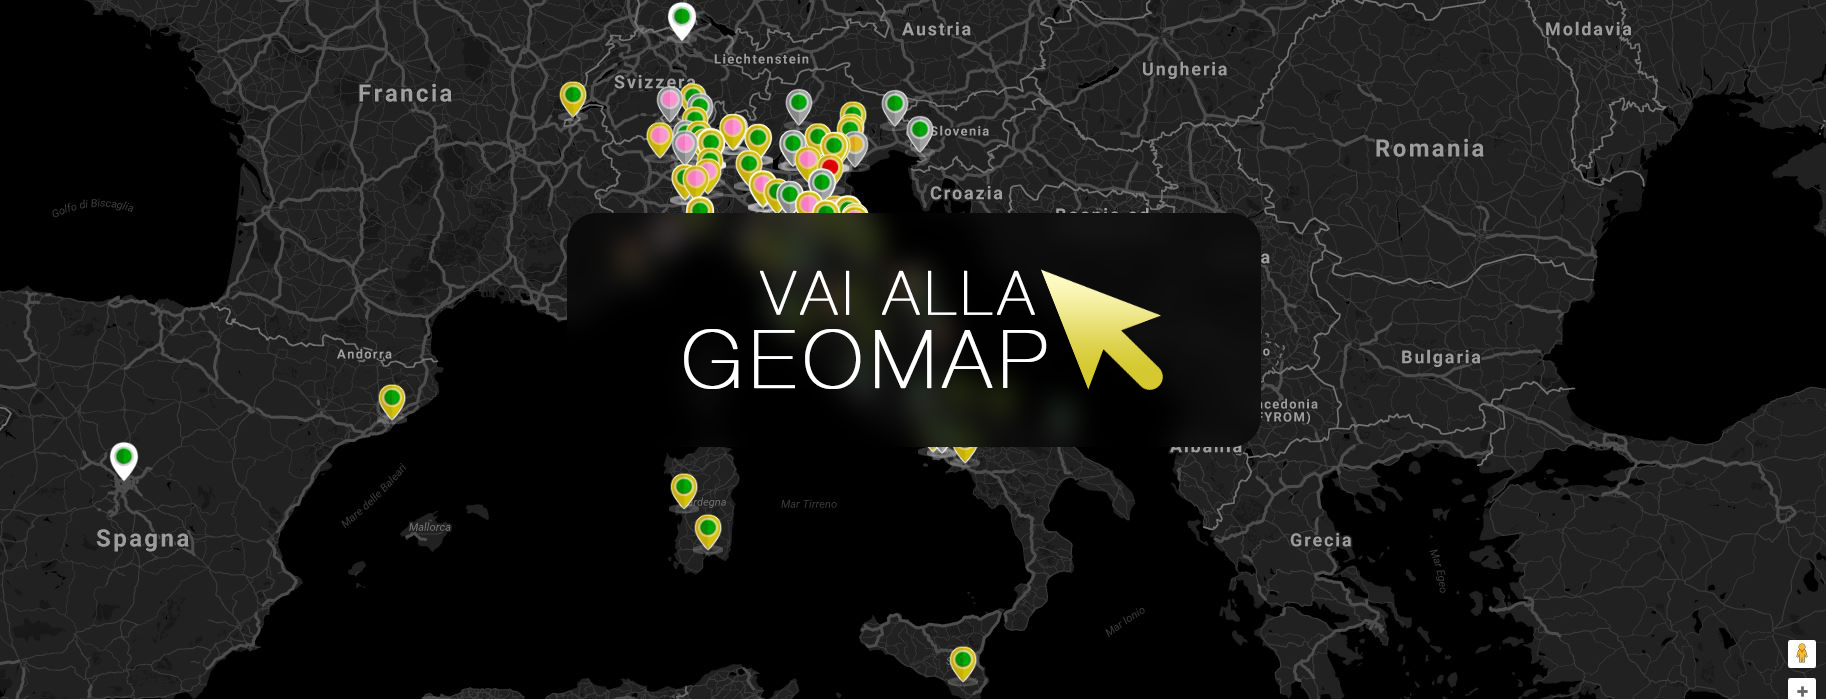 Guarda gli annunci a Napoli nella mappa intervattiva